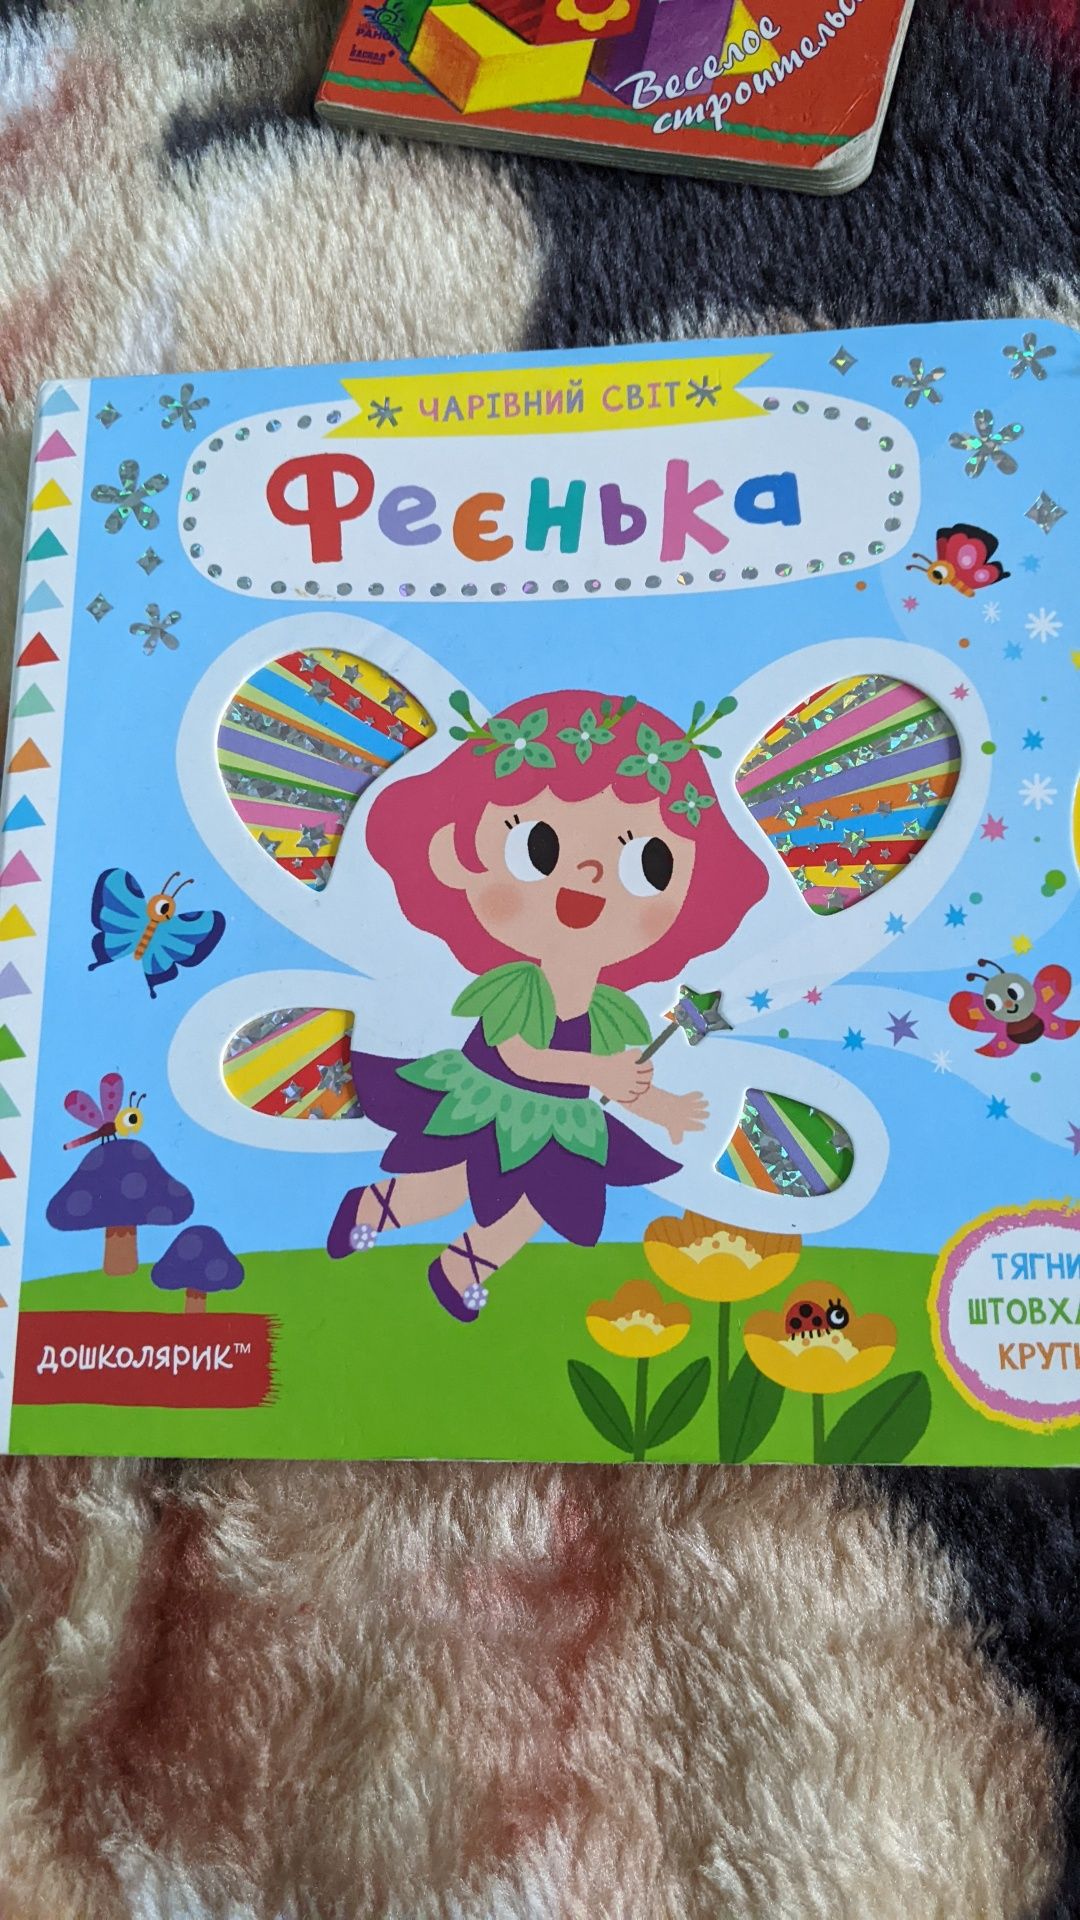 Книжки детские 1+ фірми Дошколярмк